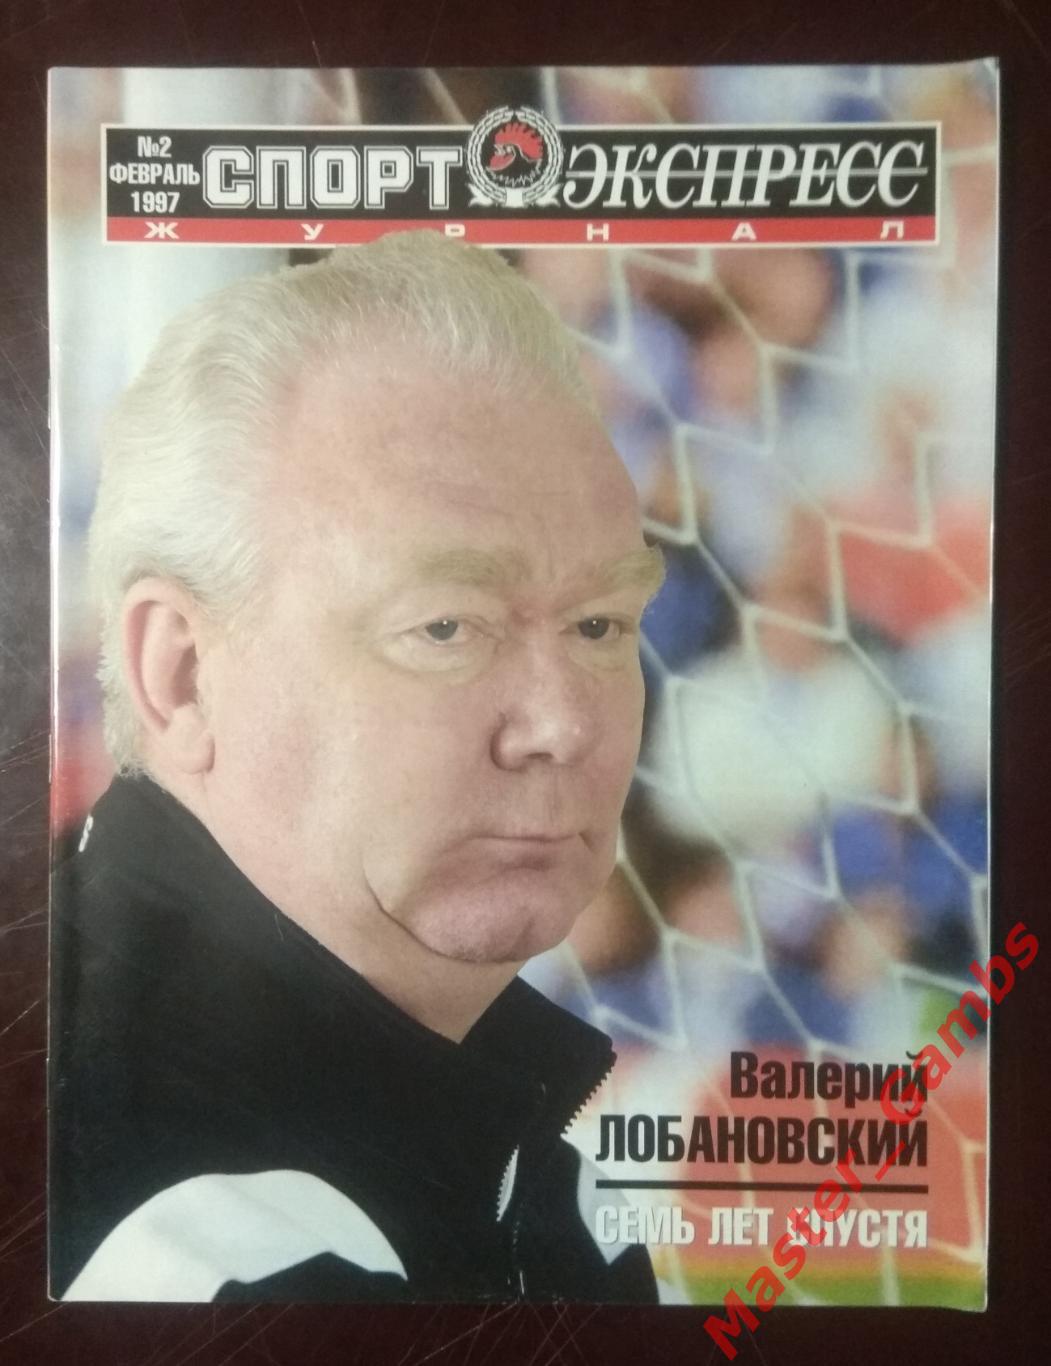 Журнал спорт экспресс #2 февраль 1997 москва